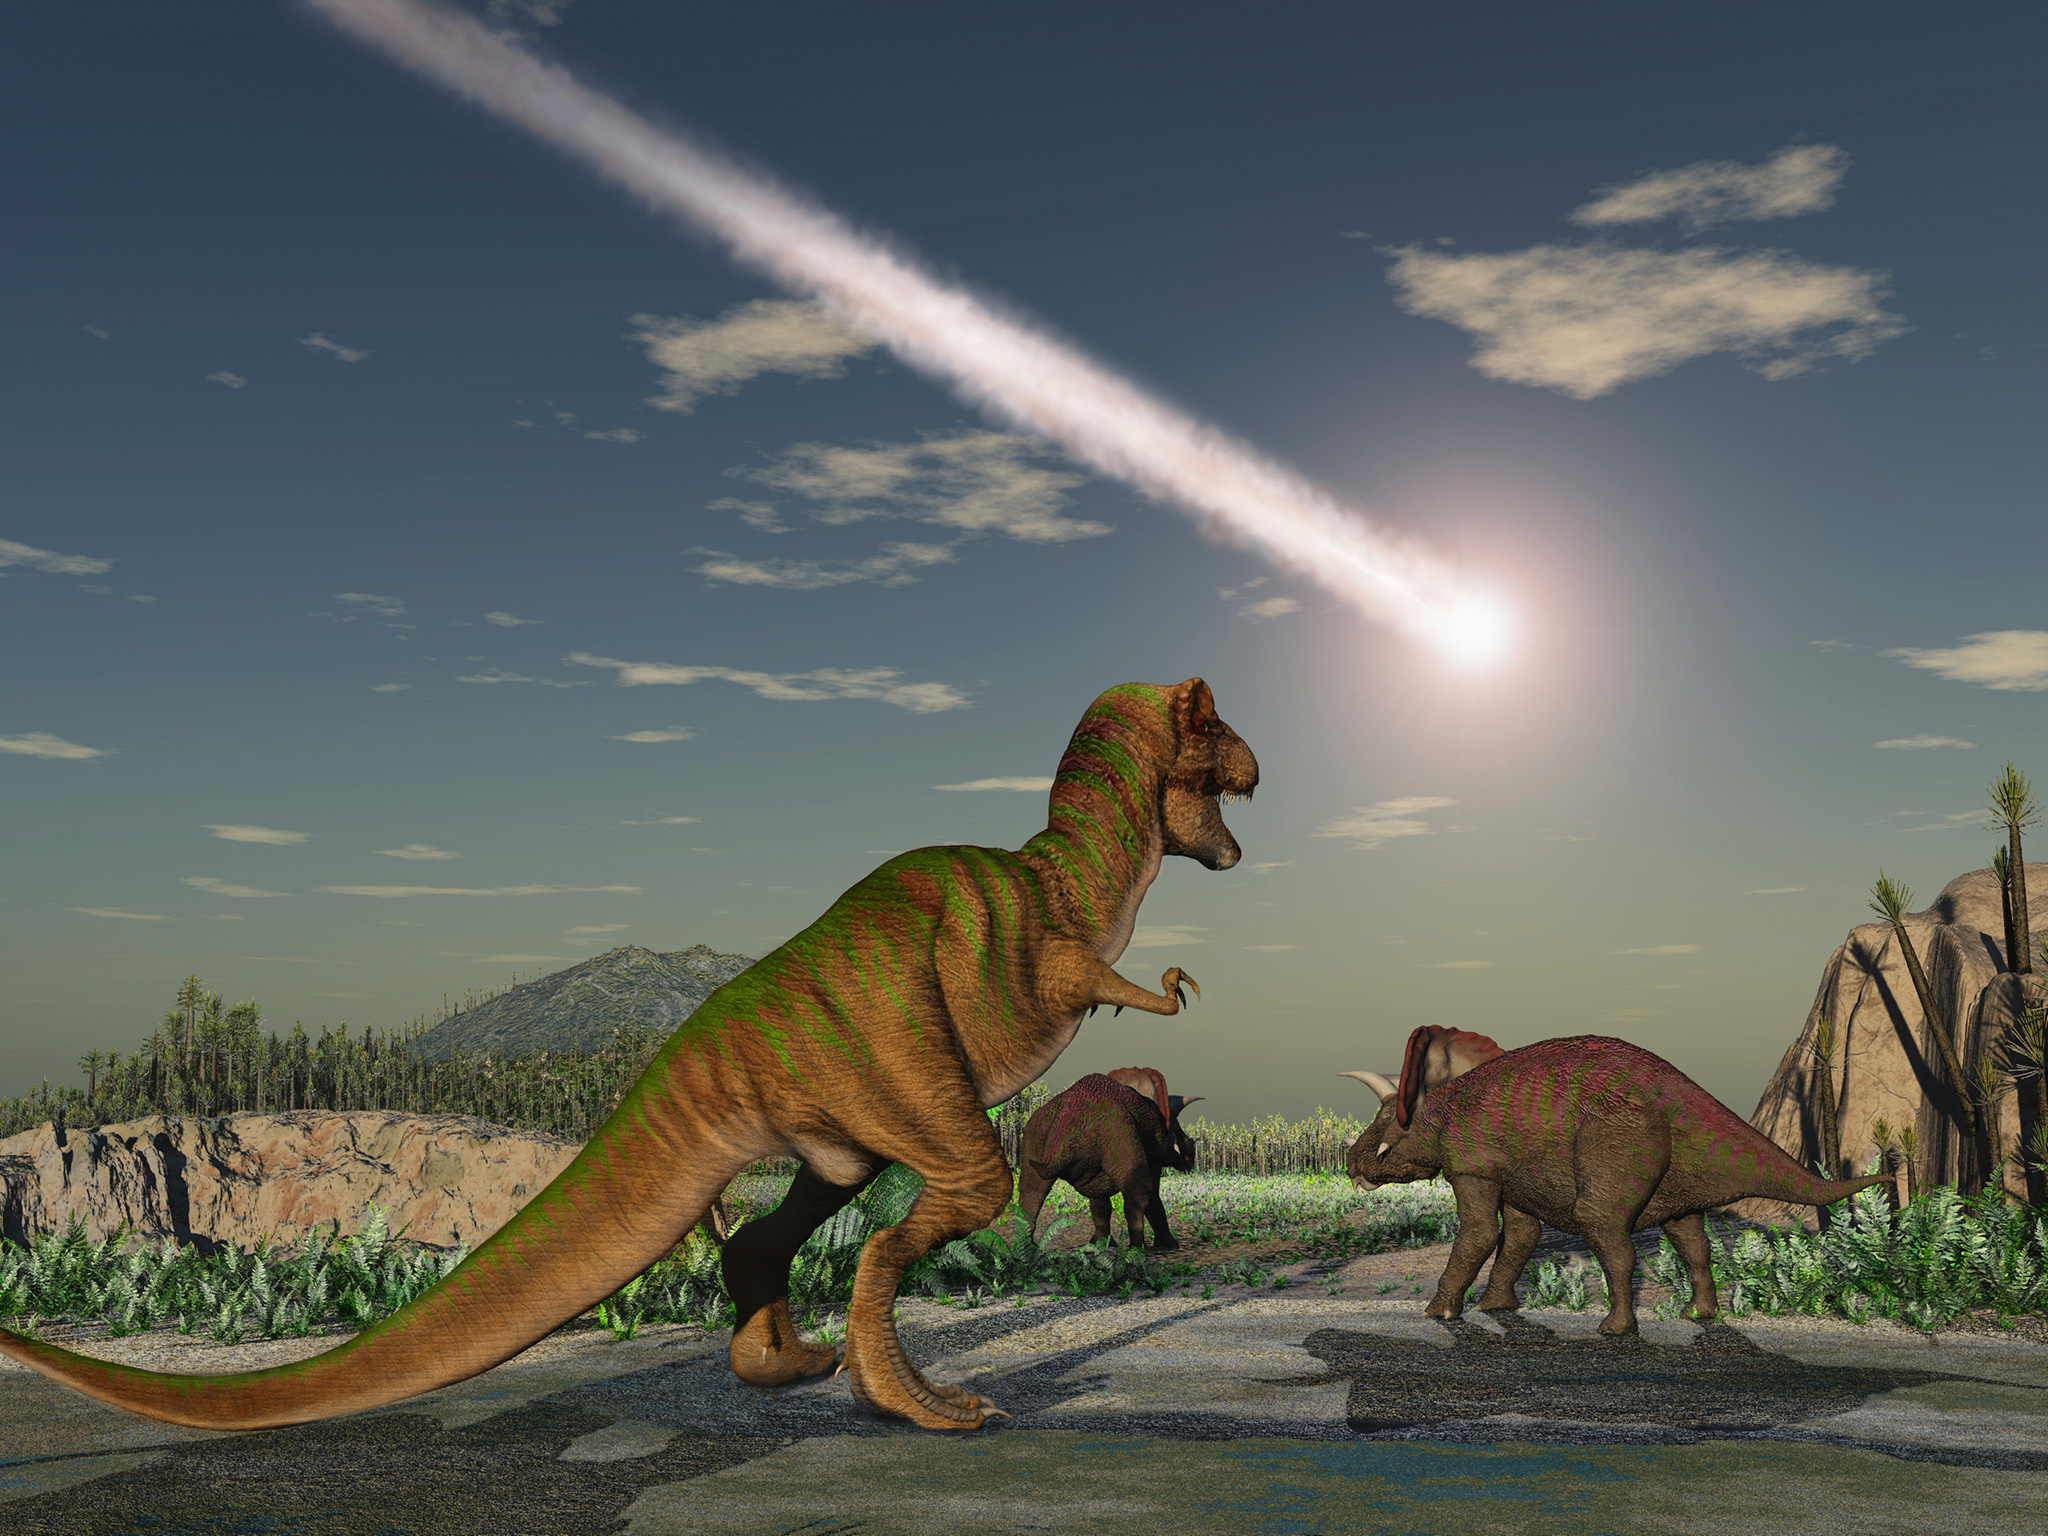 Πέντε τρομακτικές θεάσεις που θα μπορούσαν να αποδείξουν ότι δεινόσαυροι εξακολουθούν να υπάρχουν (βίντεο)